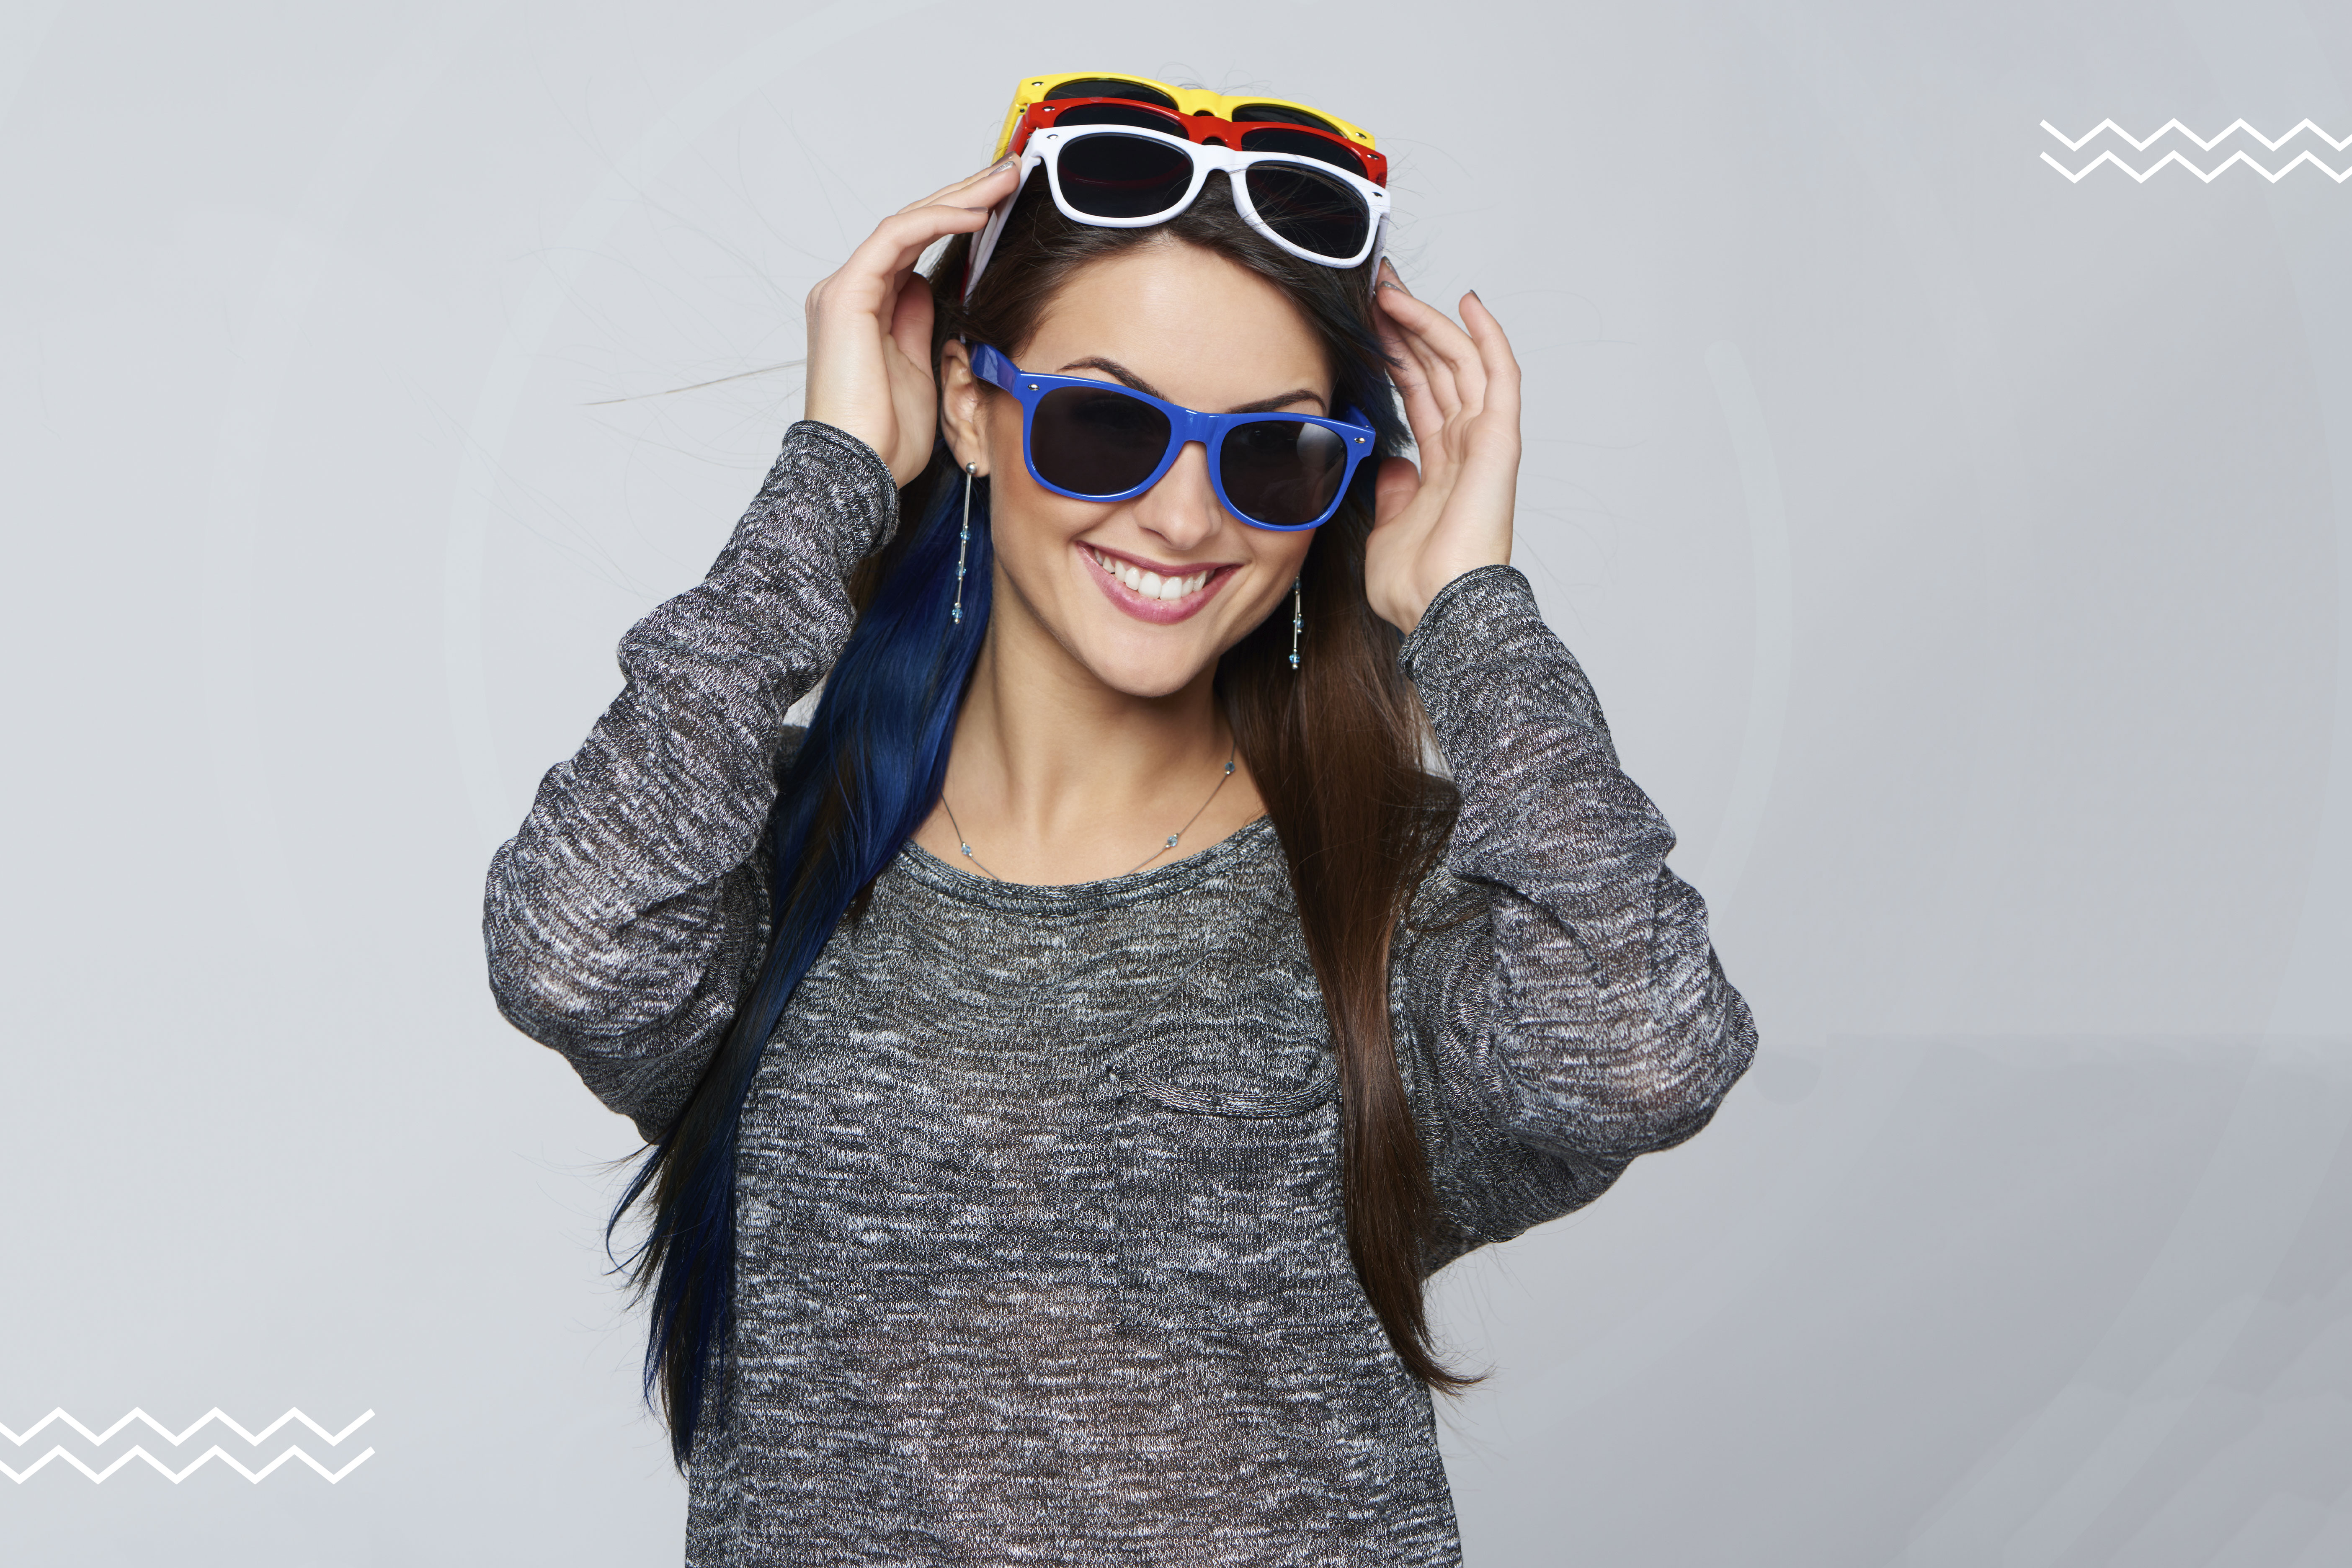 Imagen de una mujer joven que se está probando feliz diferentes opciones de lentes de sol.